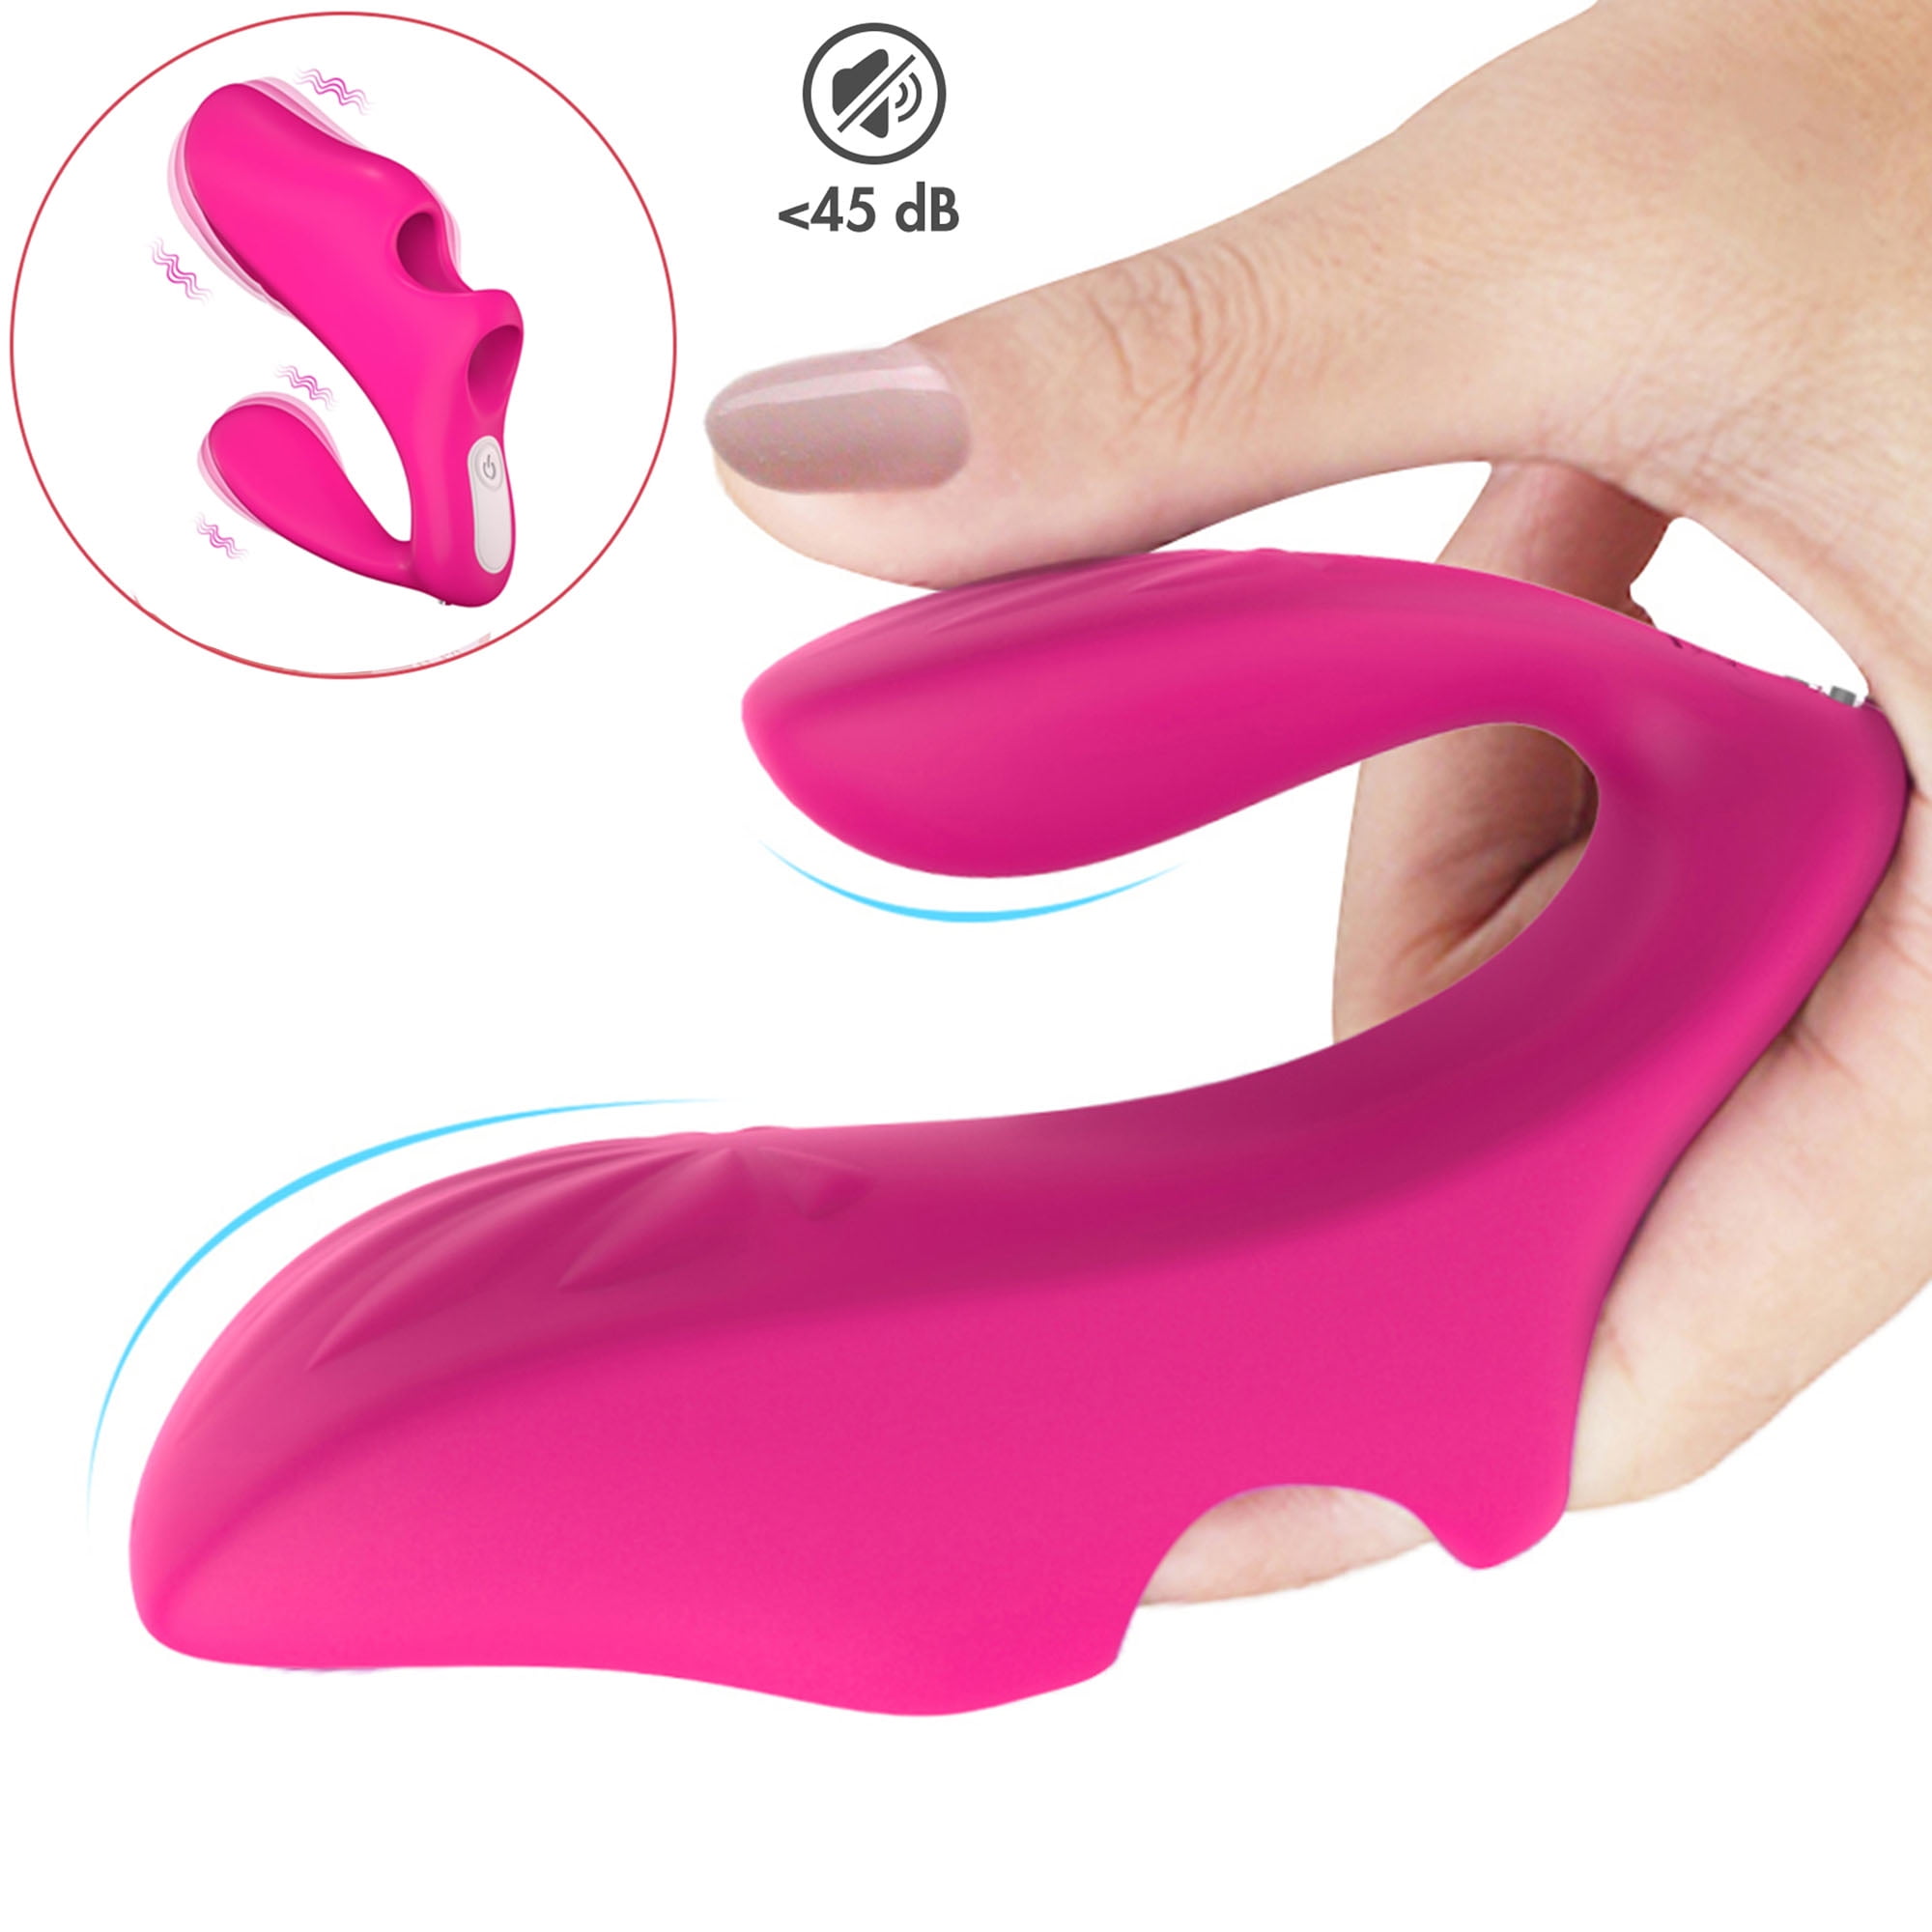 Fidech Finger Vibrator For Women G Spot Vibrator Silicone Finger